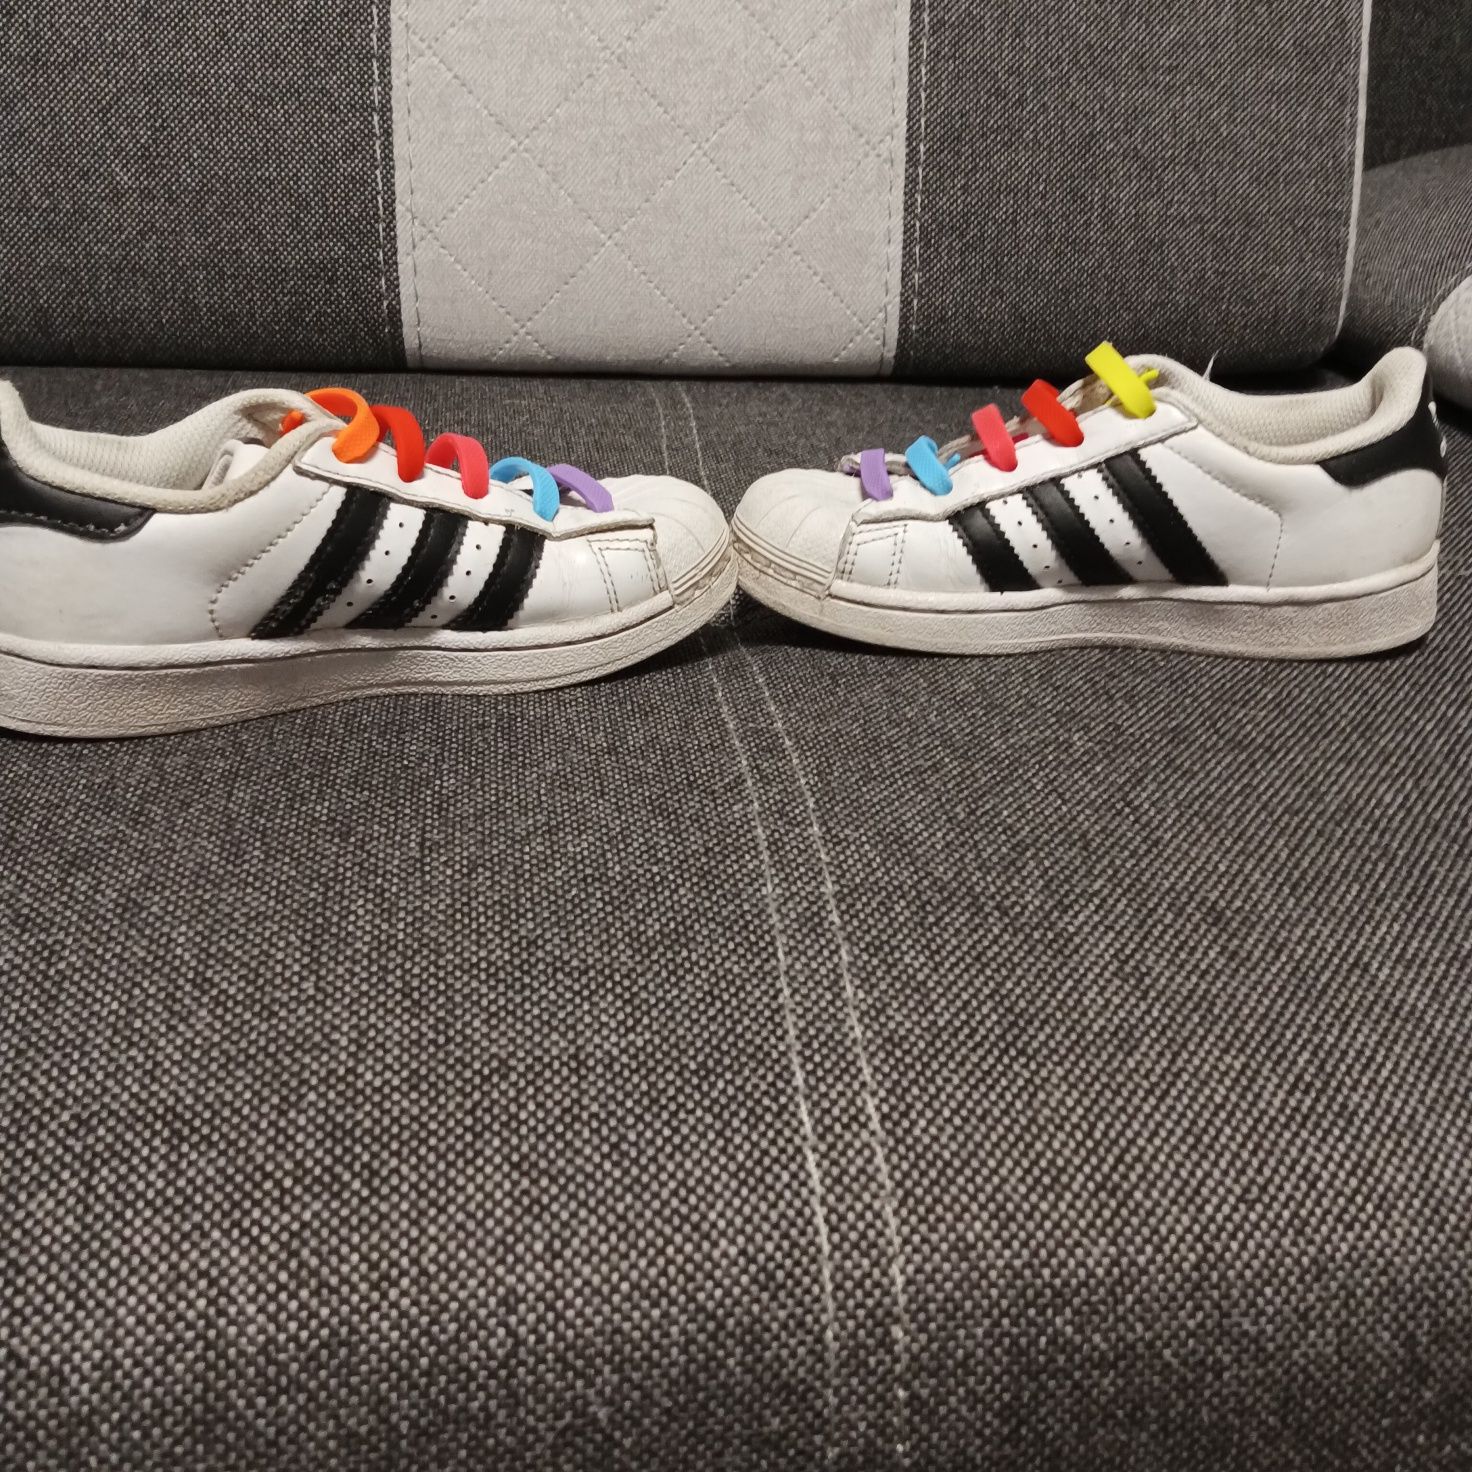 Buty dziecięce unisex Adidas Superstar białe z czarnymi dodatkami